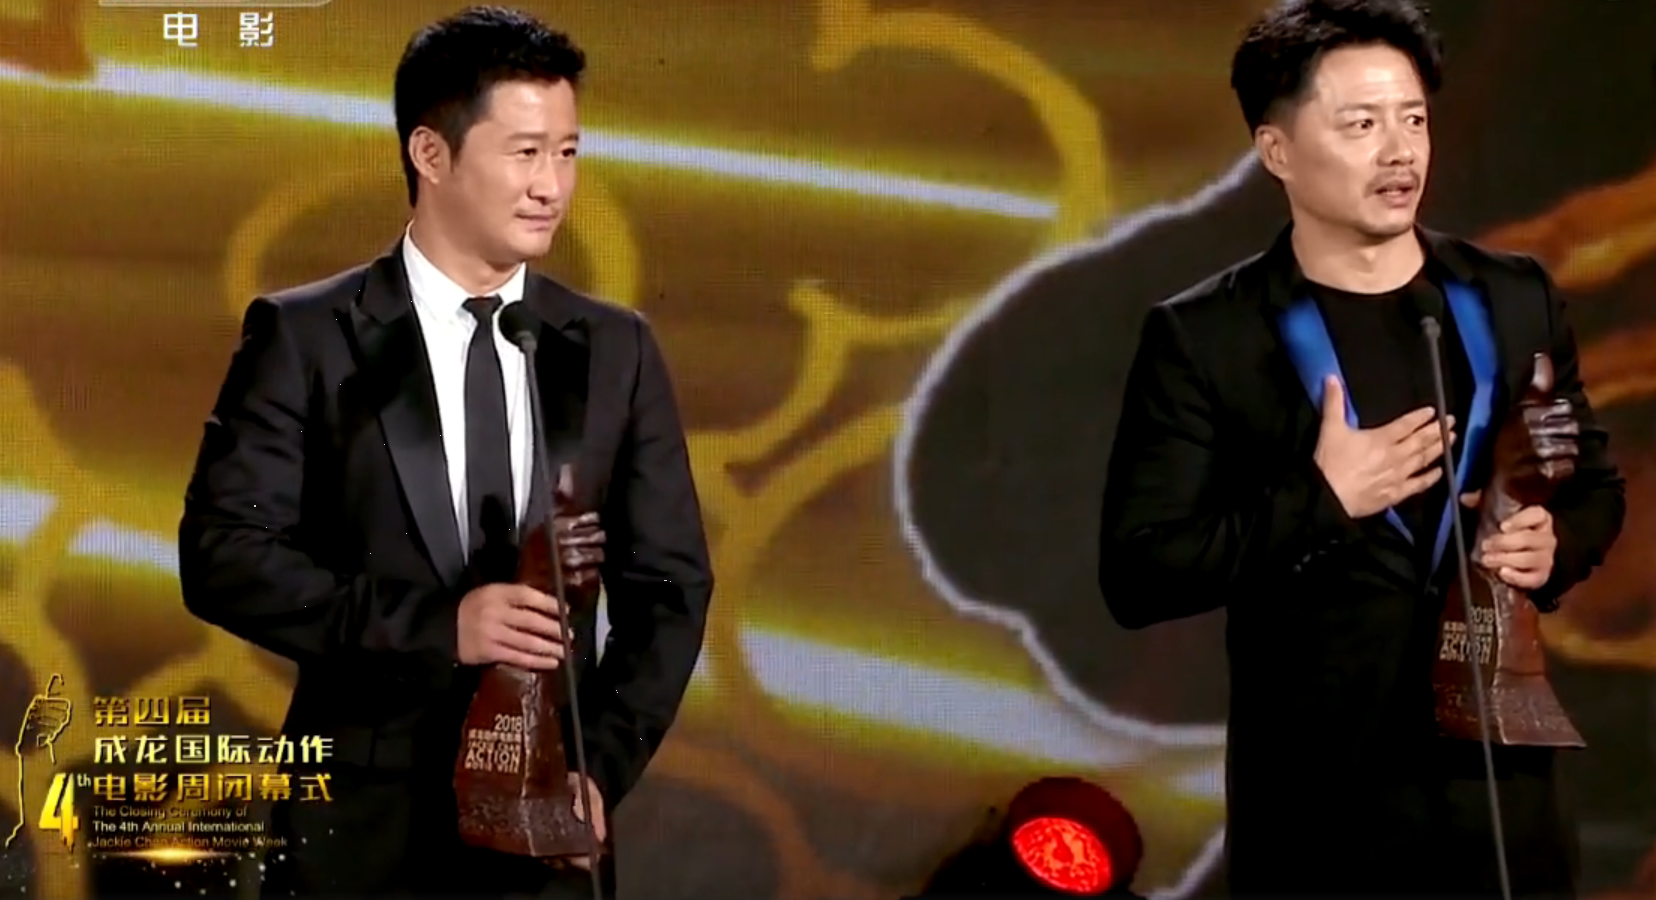 吴京凭借战狼2获成龙电影周最佳动作演员,拿着奖杯的他表情亮了